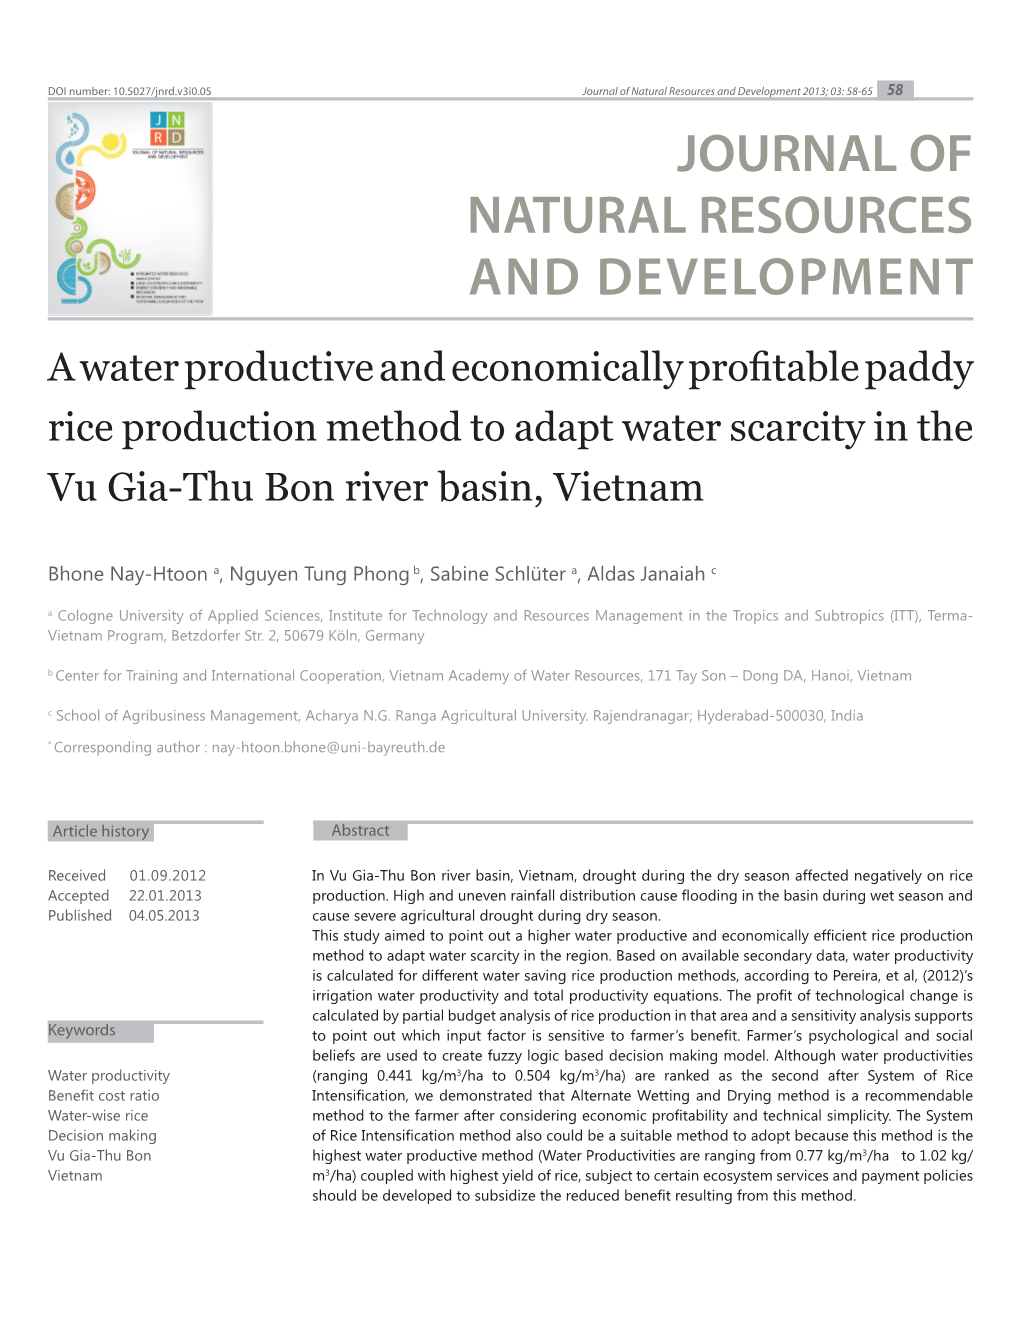 Vu Gia-Thu Bon River Basin, Vietnam